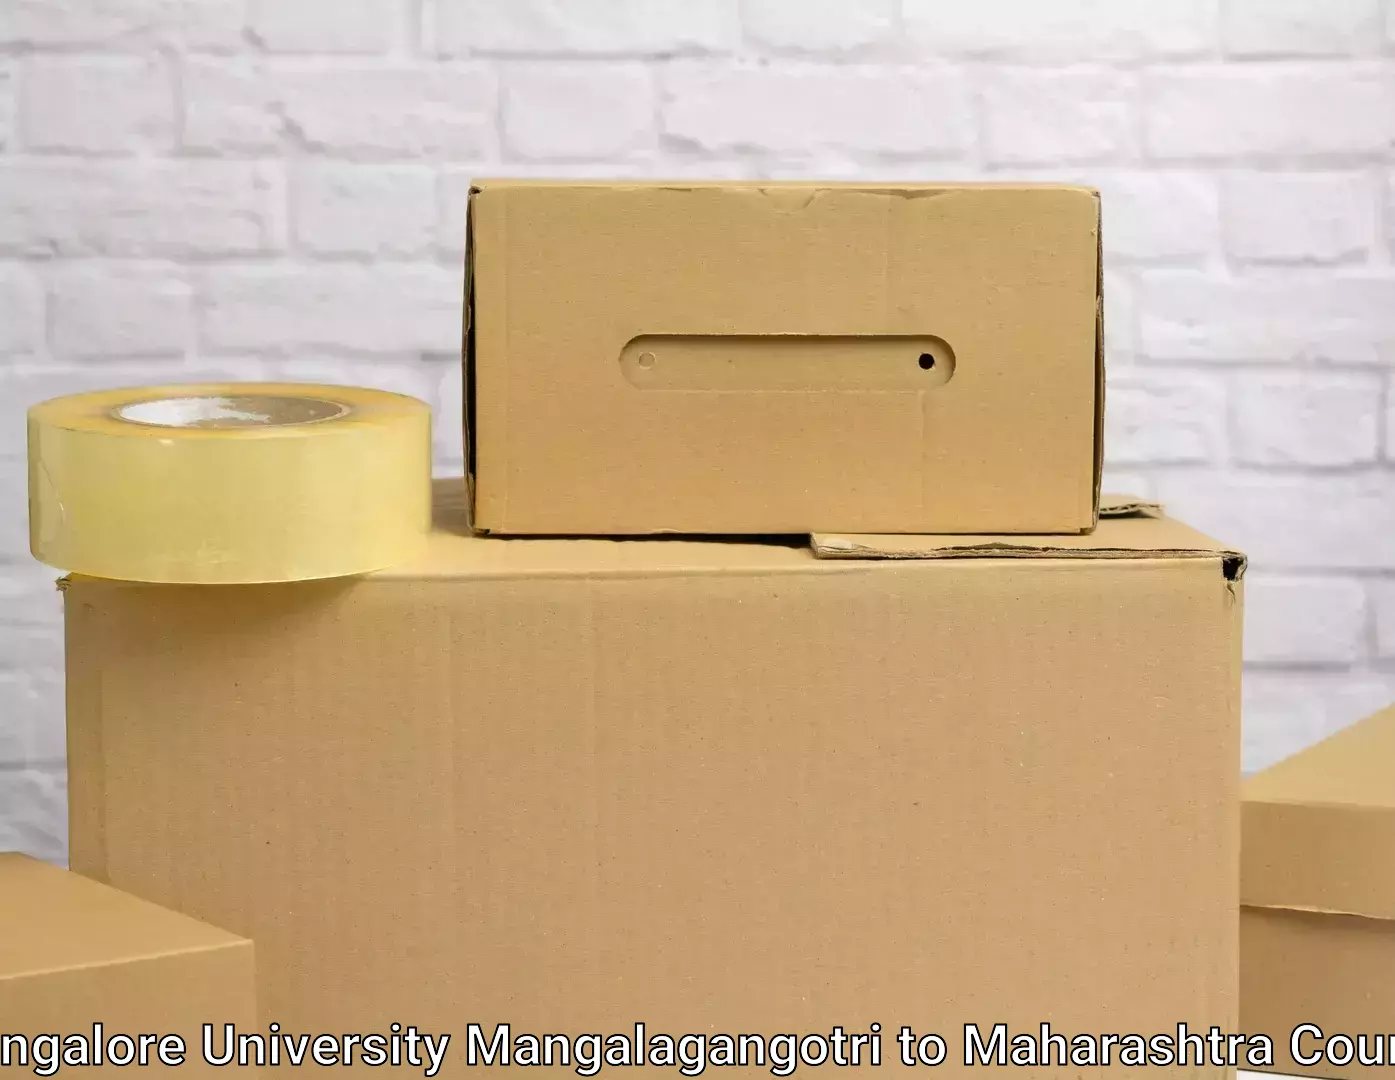 Customized household moving in Mangalore University Mangalagangotri to Maharashtra